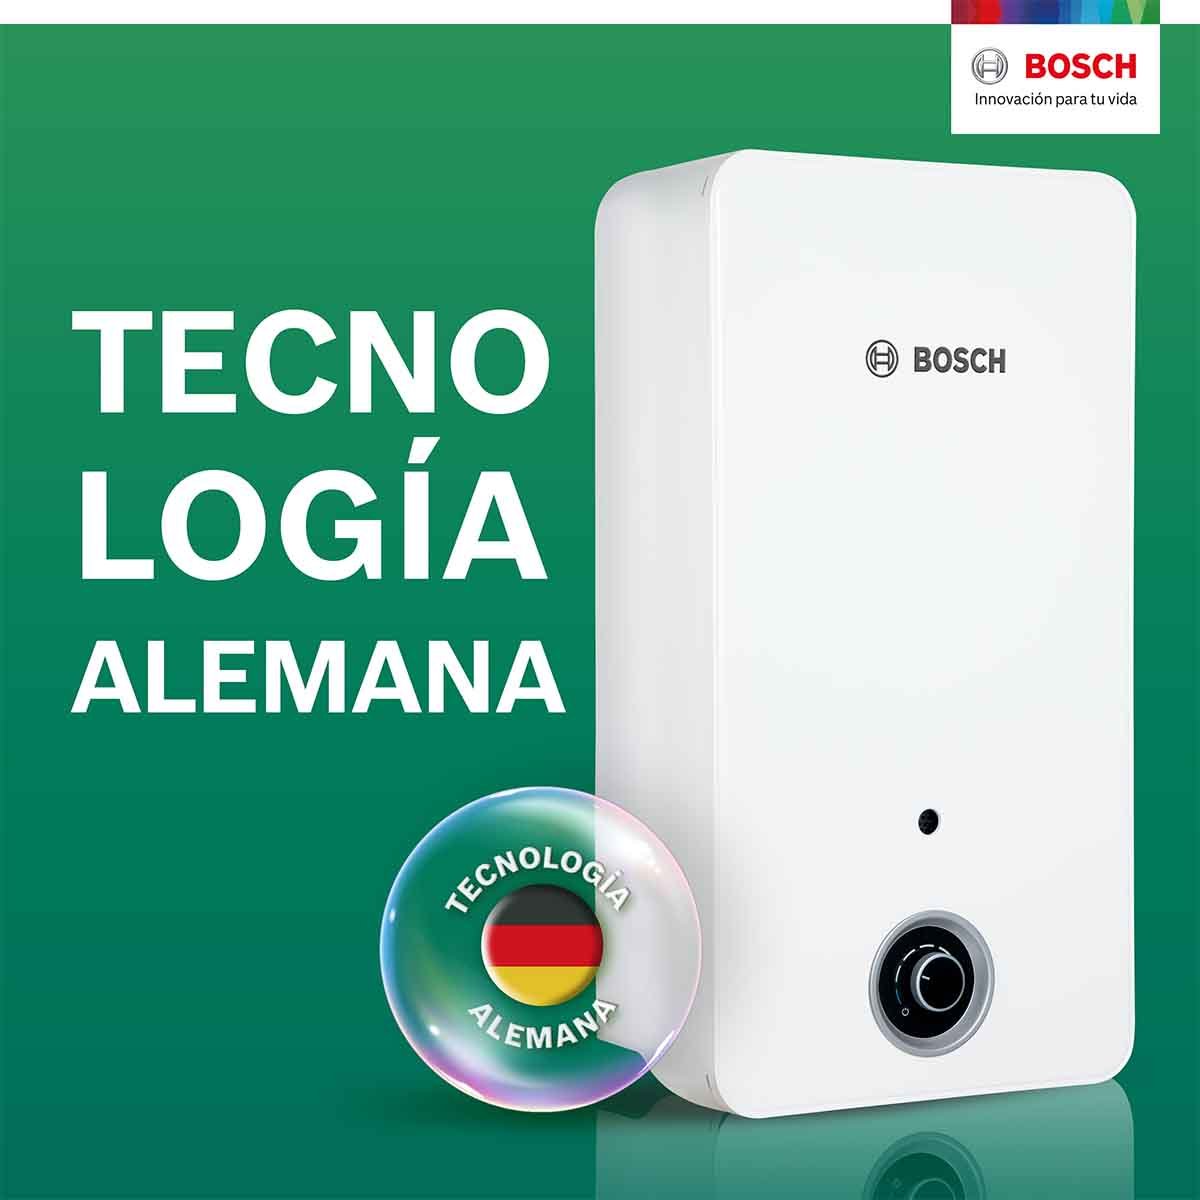 Calentador De Paso 1 Servicio Balanz 7 Gas Natural Bosch